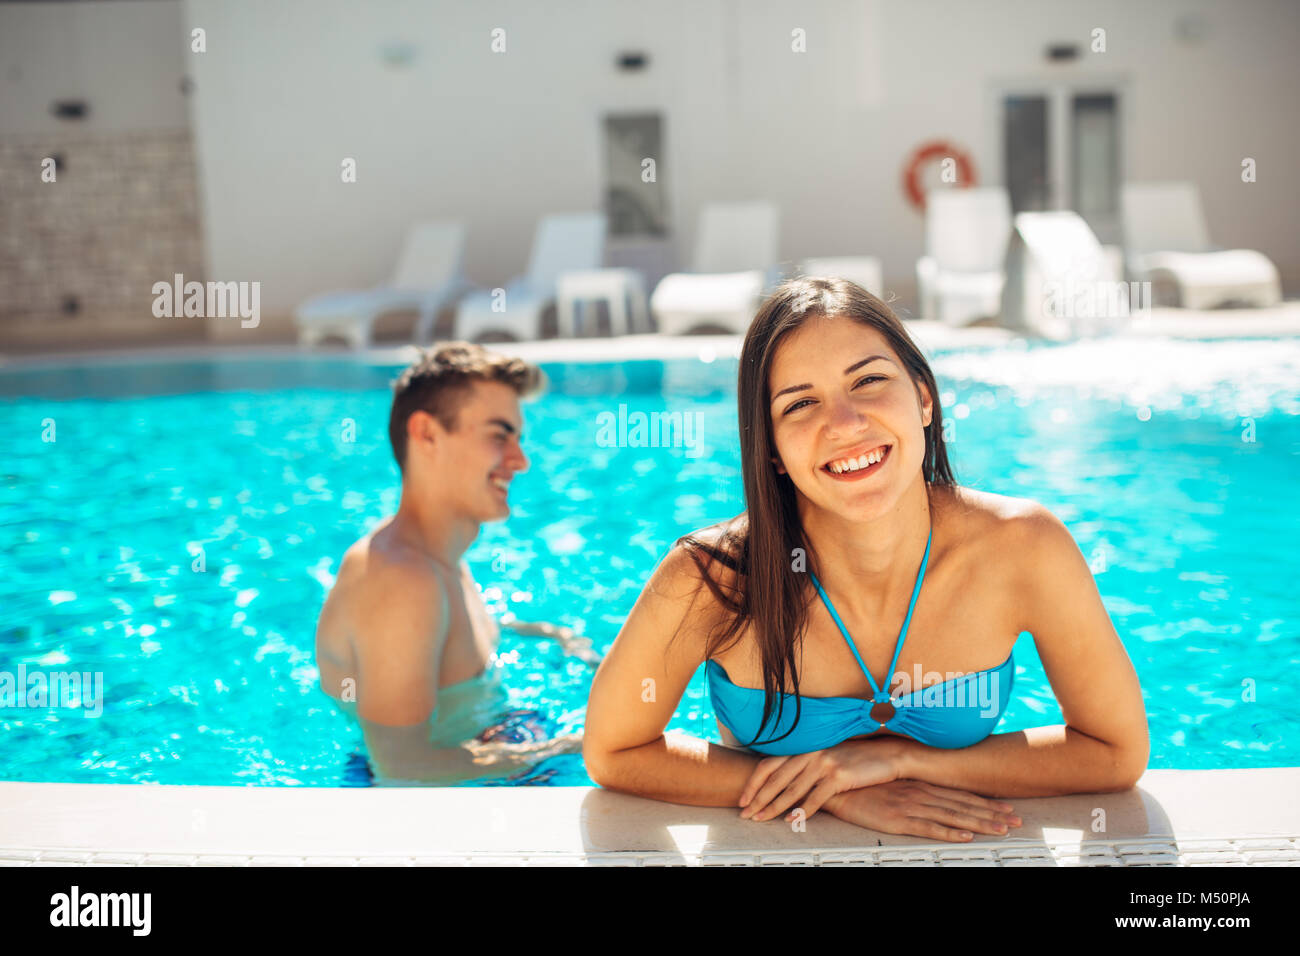 Smiling cheerful woman swimming in pool clairement sur une journée ensoleillée.s'amuser en vacances pool party.Friendly female bénéficiant d'hôtel relaxant locations.Somme Banque D'Images